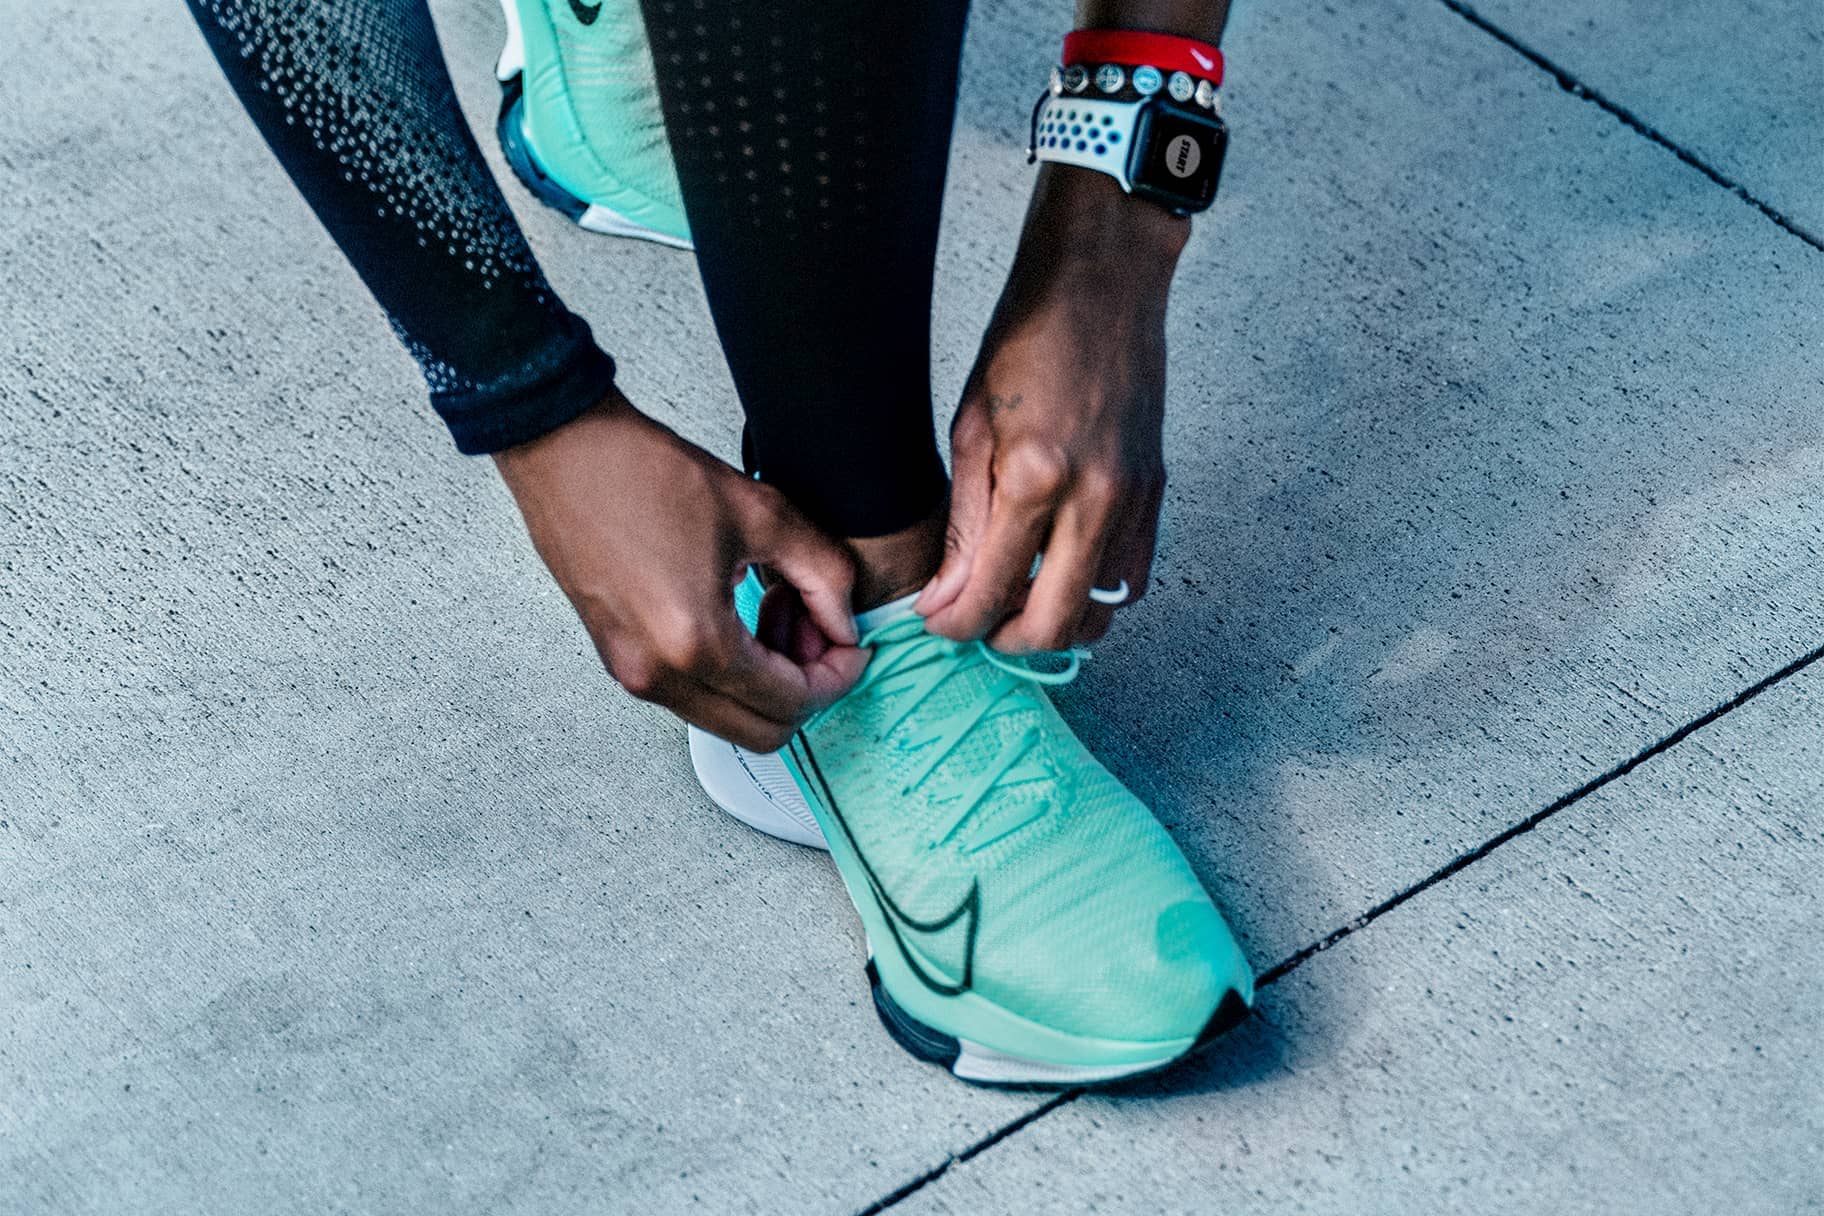 Entretener protestante cáustico El mejor calzado con amortiguación de Nike para correr y caminar. Nike